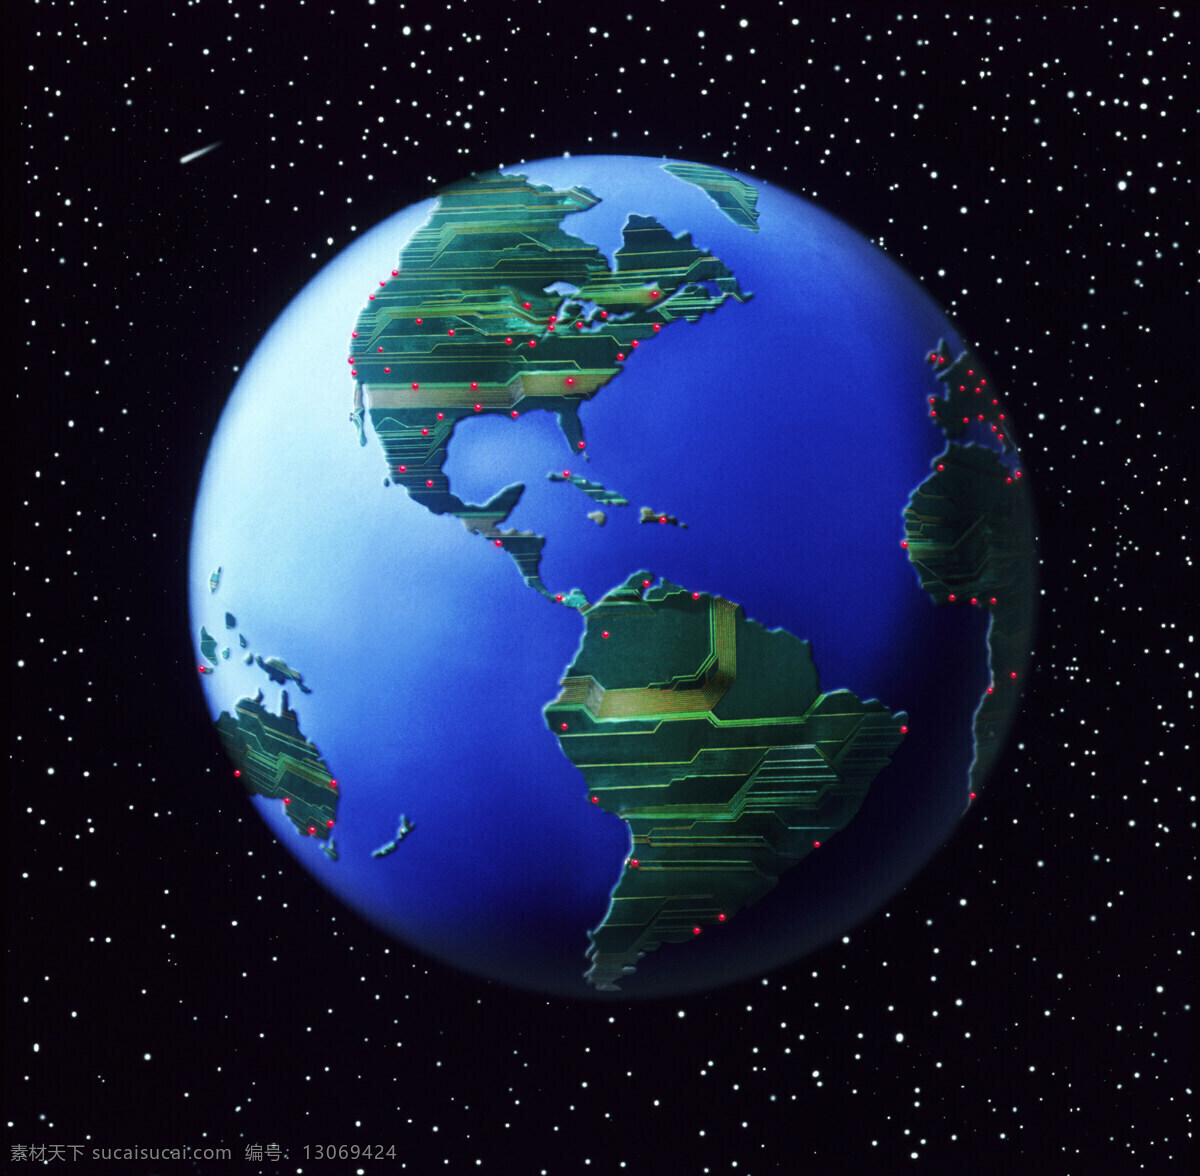 梦幻 星空 地球 创意 地球背景 科技 网络 信息 抽象 数字 地图 鸟瞰图 星量 高清地球图片 高清图片 地球图片 环境家居